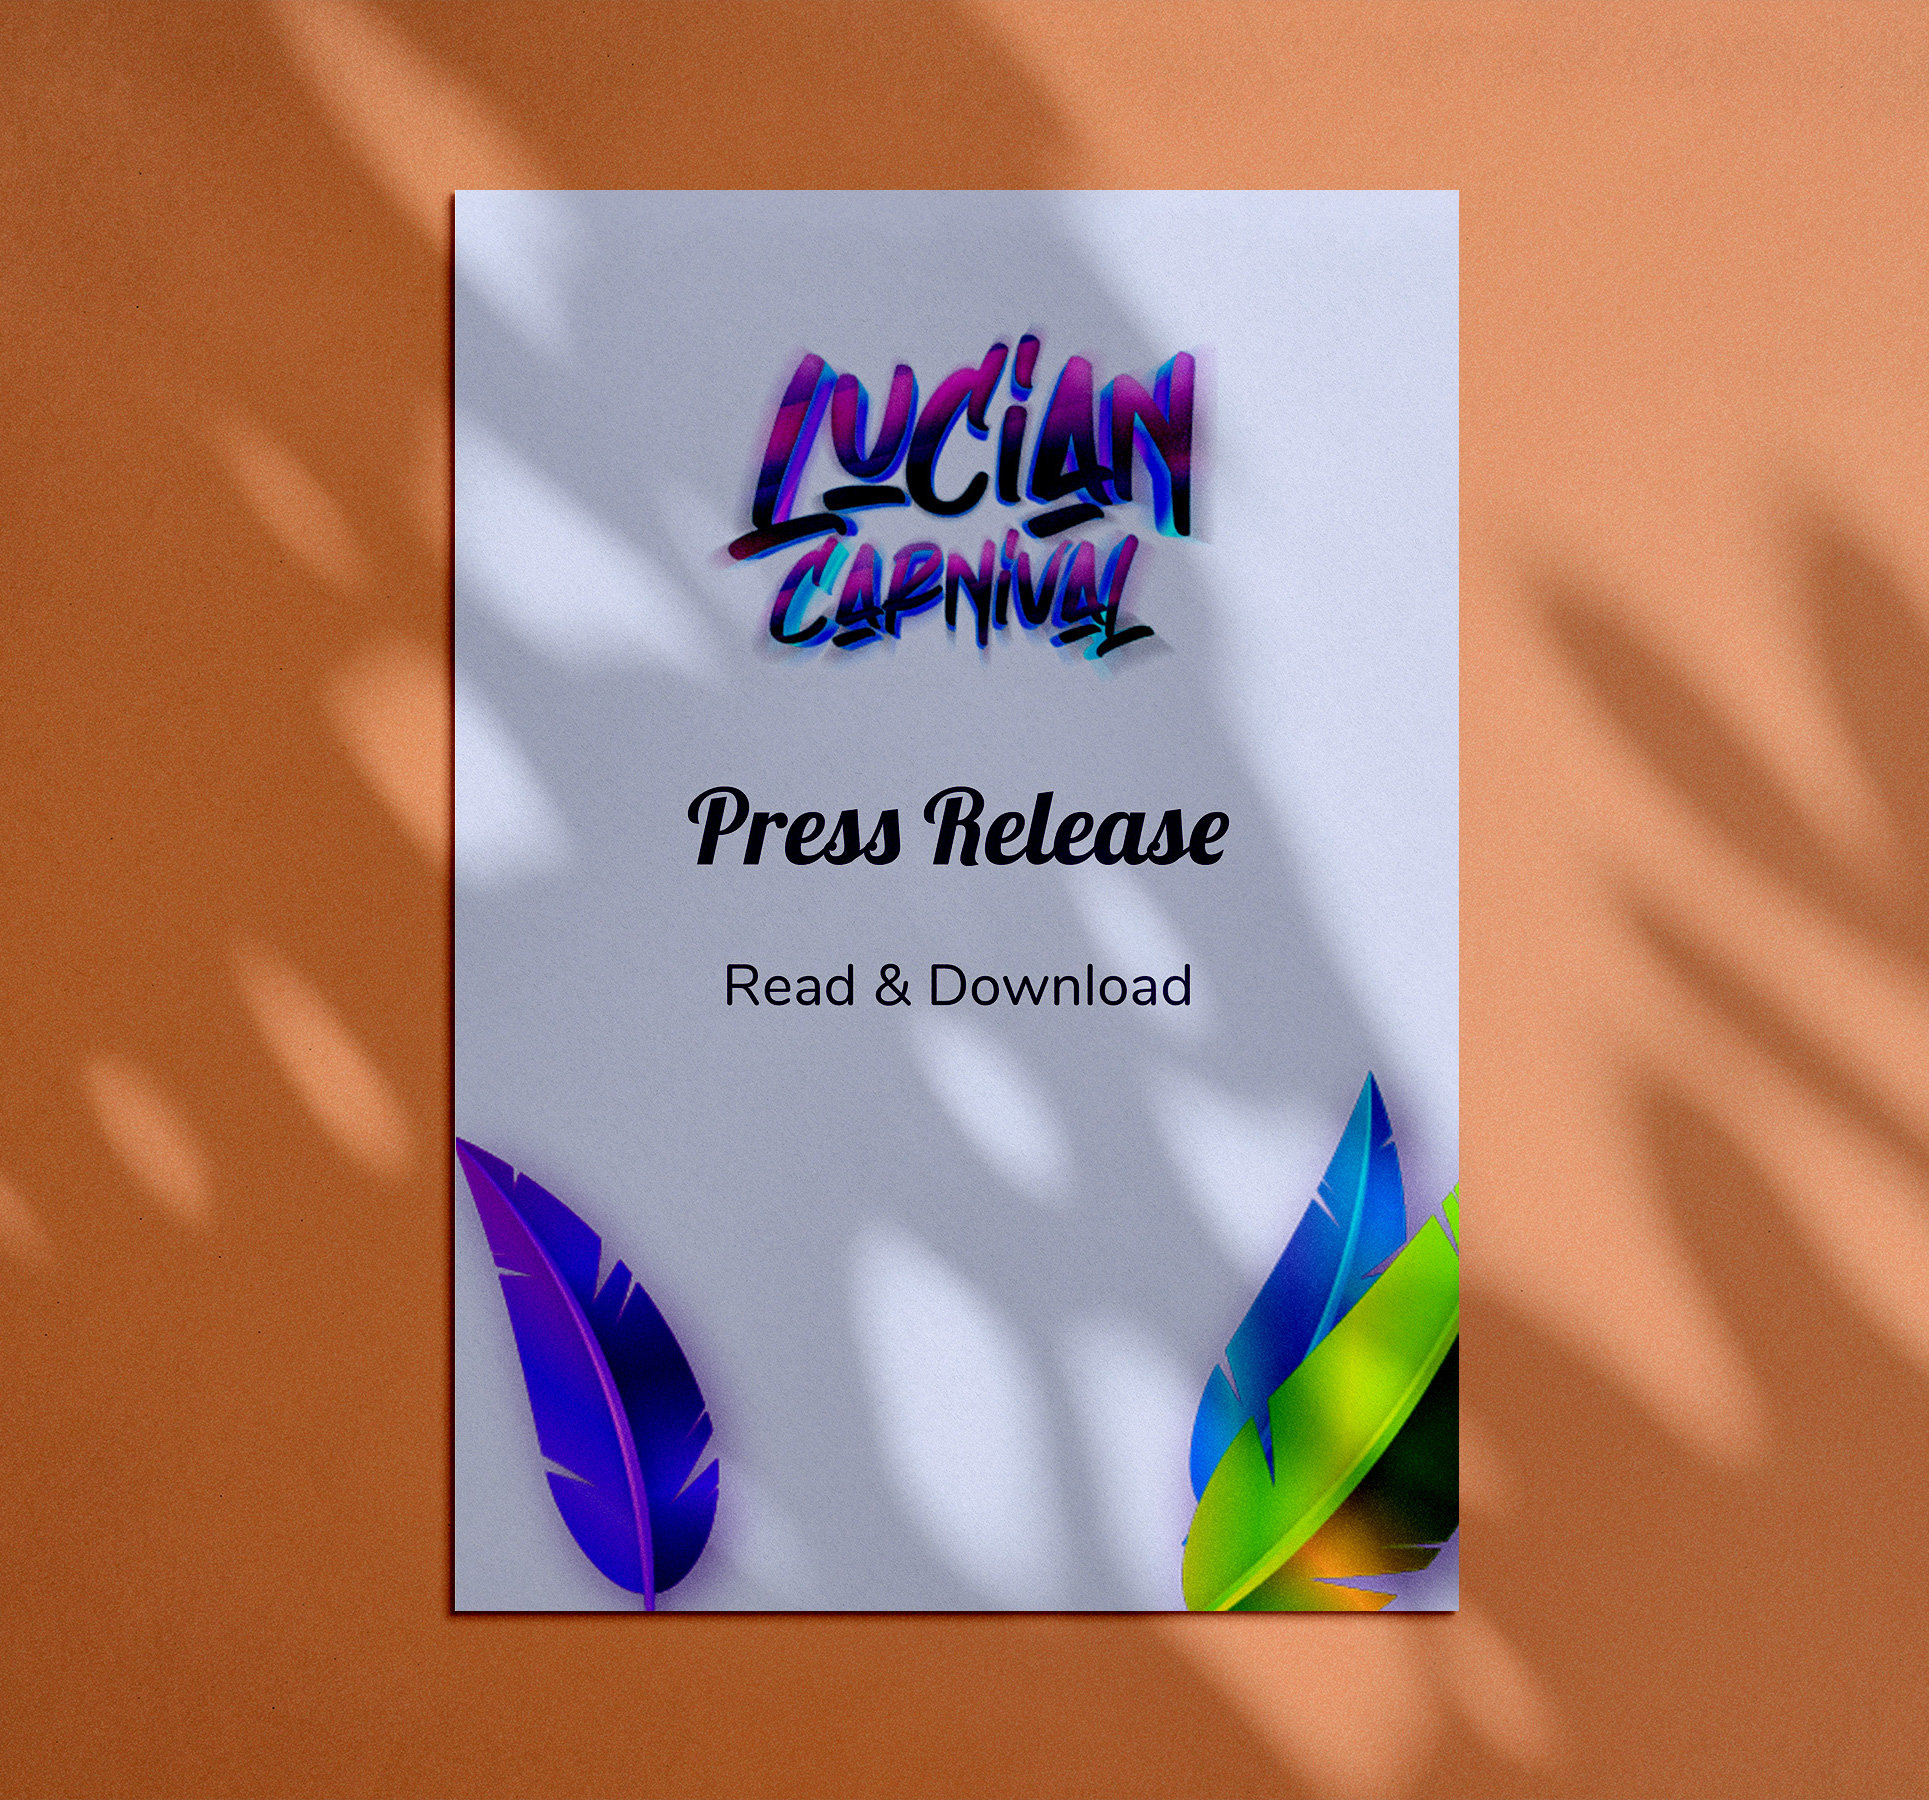 Saint Lucia Carnival – Press Release